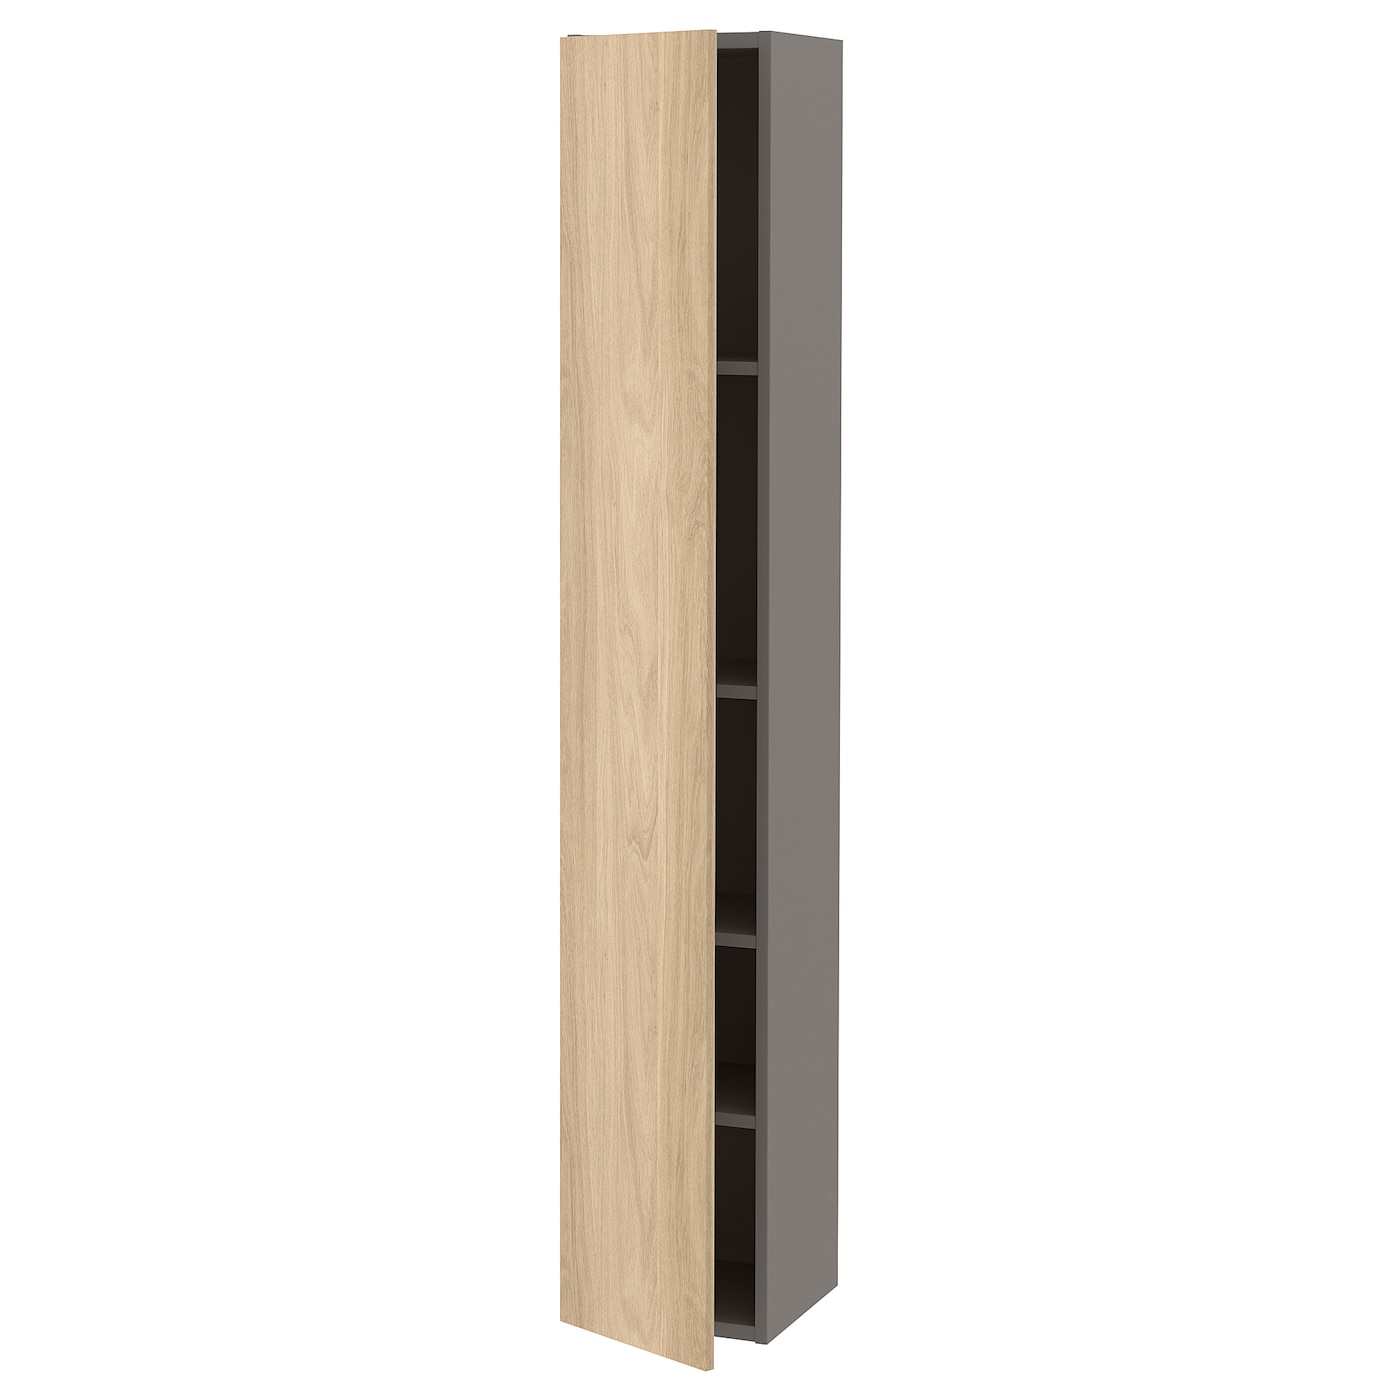 Высокий шкаф с дверцами - IKEA ENHET, бежевый/светло-коричневый, 30х32х180 см, ЭНХЕТ ИКЕА